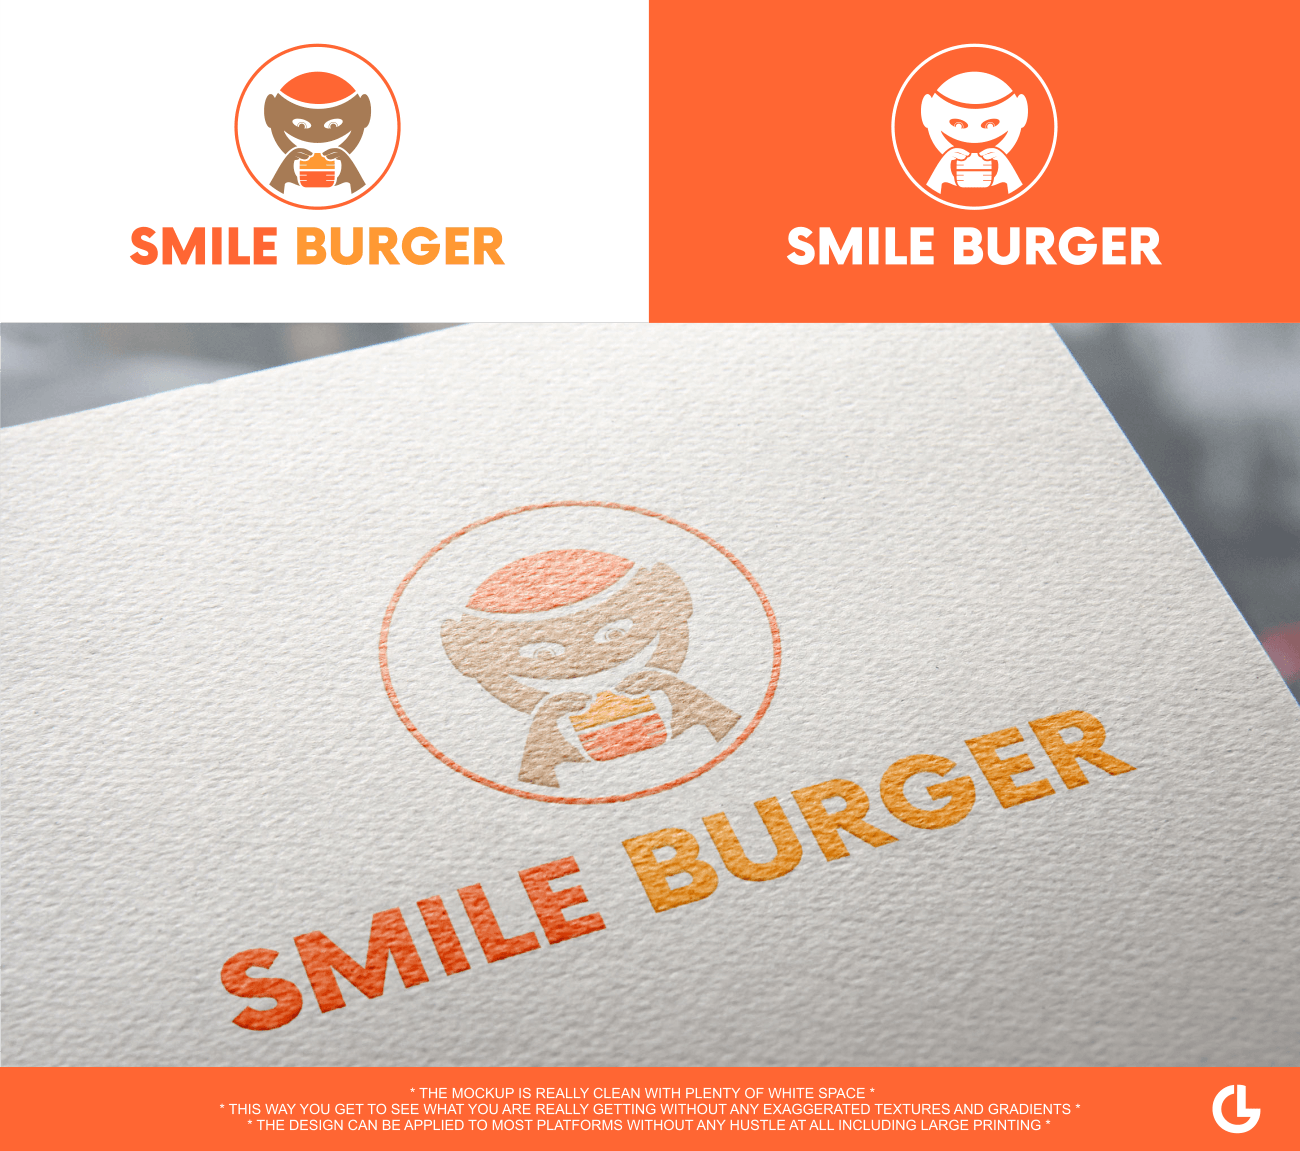 Most Popular Store Logo - Upmarket, Elegant, Food Store Logo Design for Smile Burger by L.G